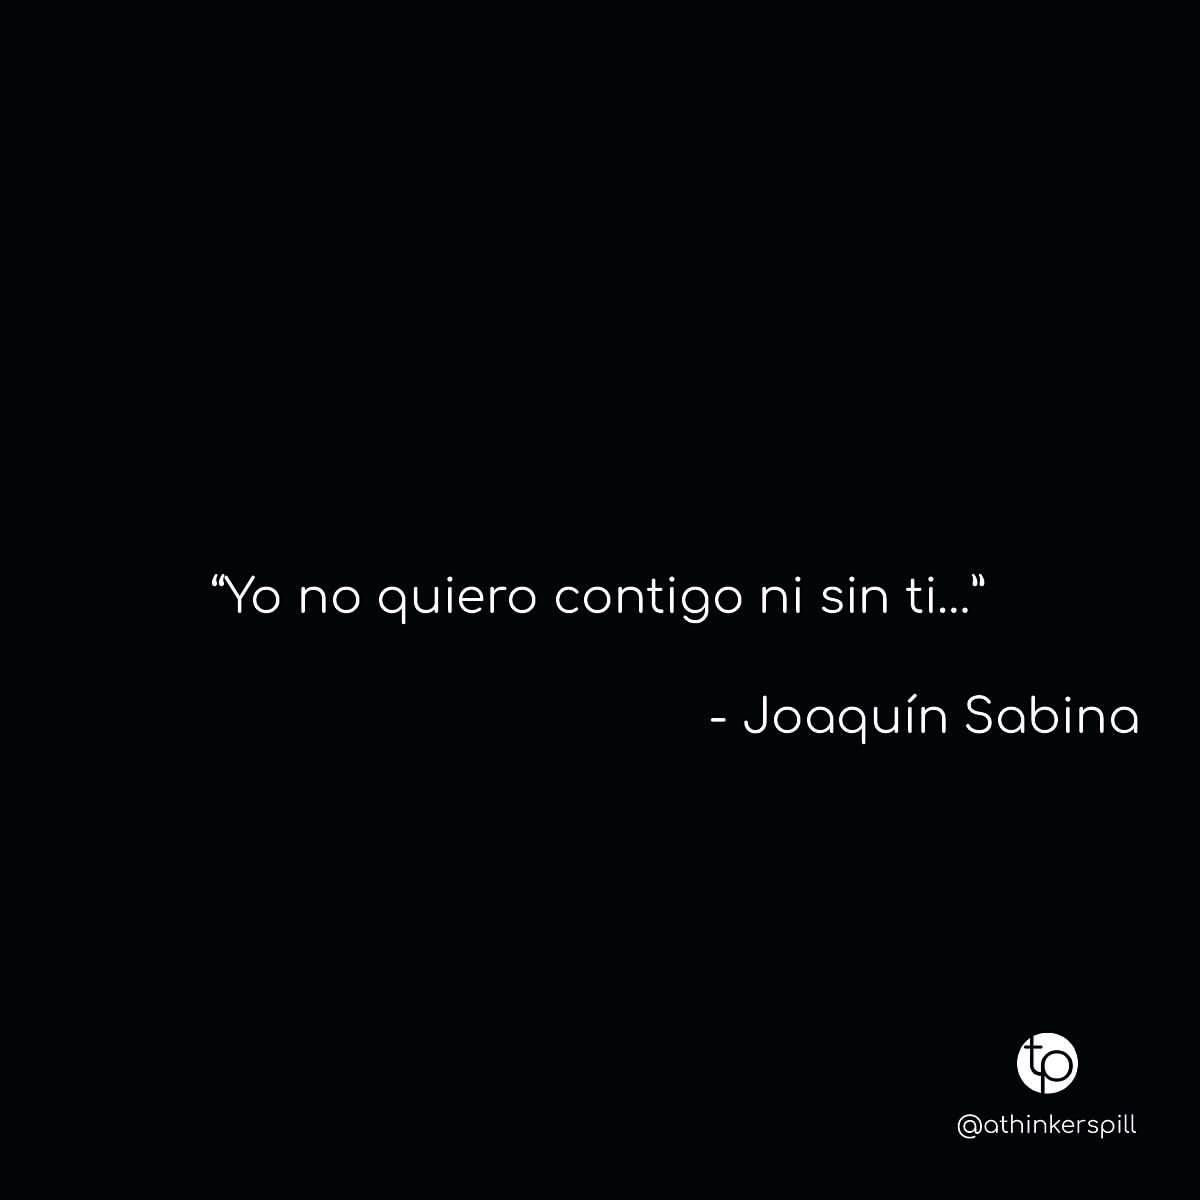 "Yo no quiero contigo ni sin ti..." Joaquín Sabina.